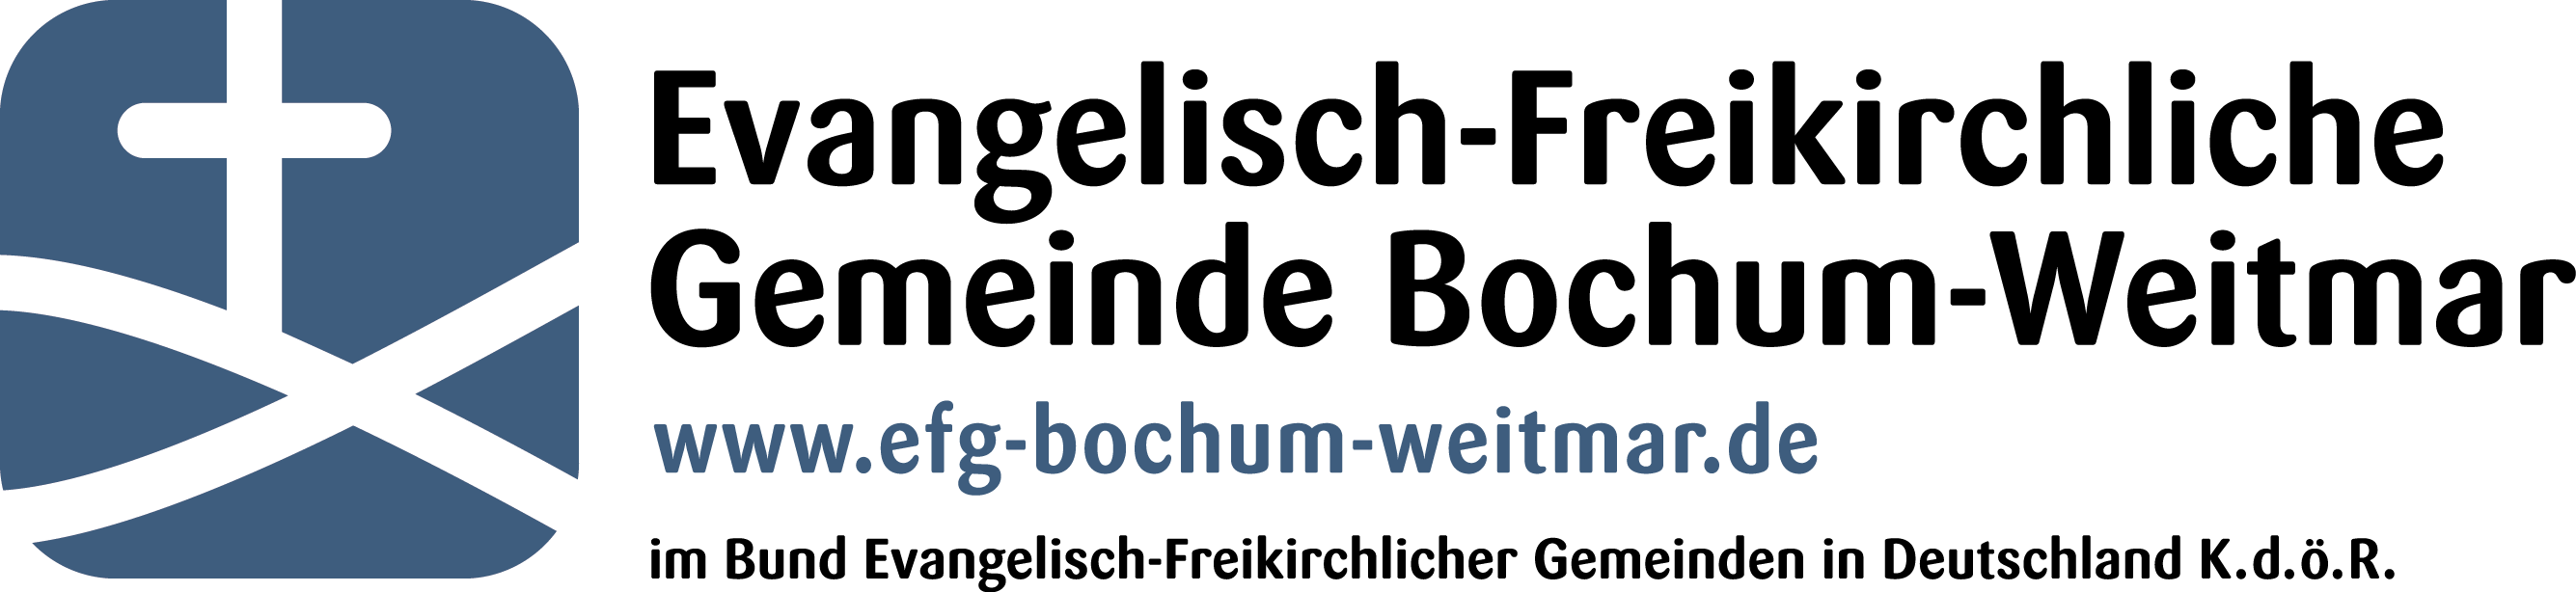 Evangelisch-Freikirchliche Gemeinde Bochum-Weitmar